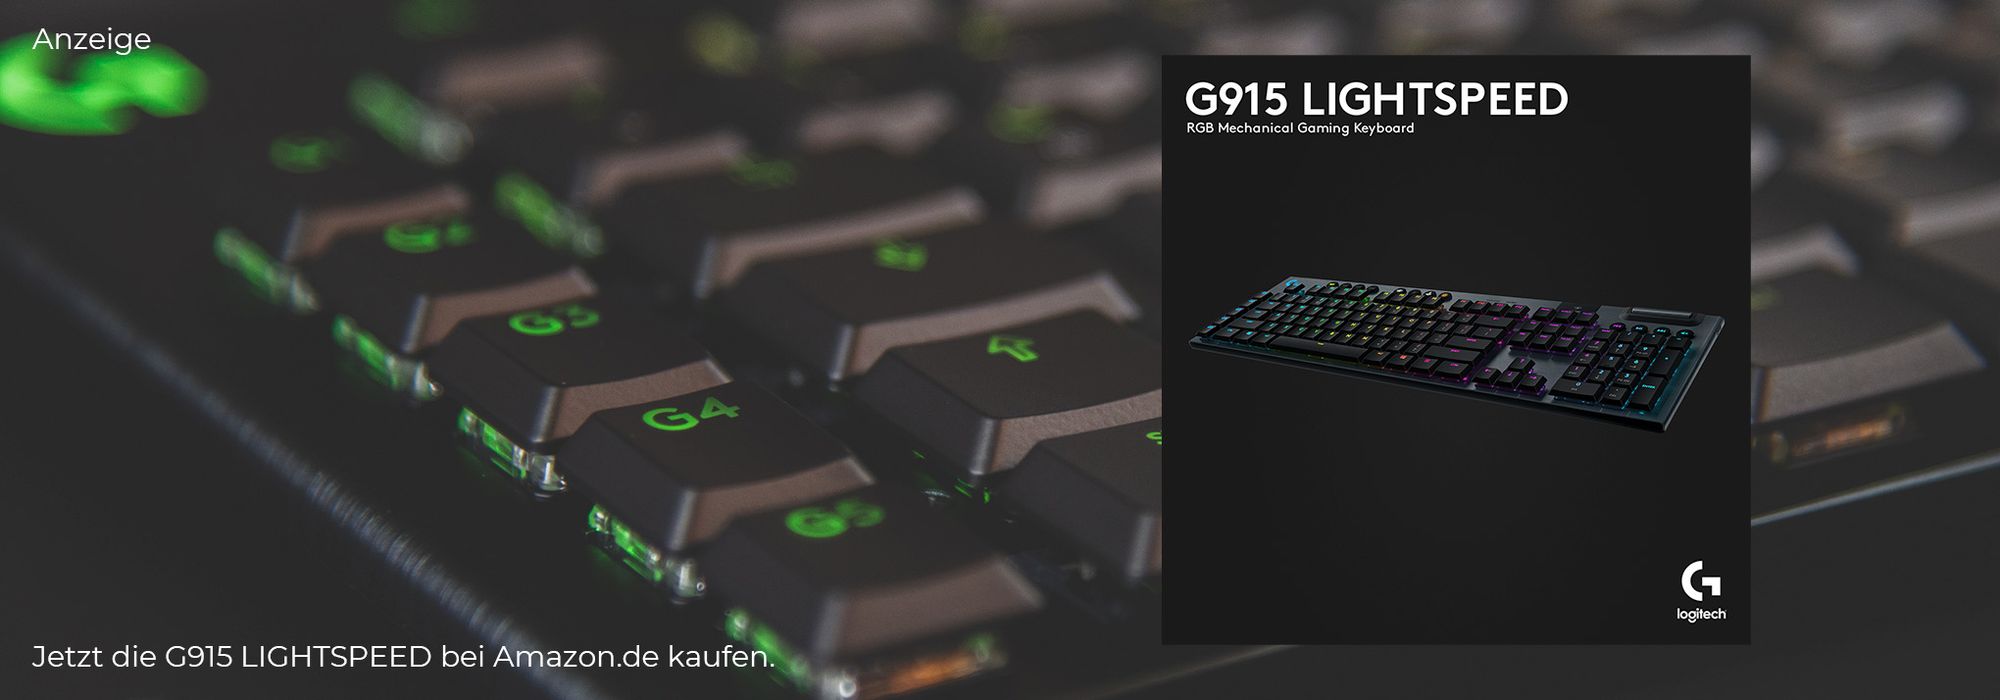 Logitech G915 Lightspeed